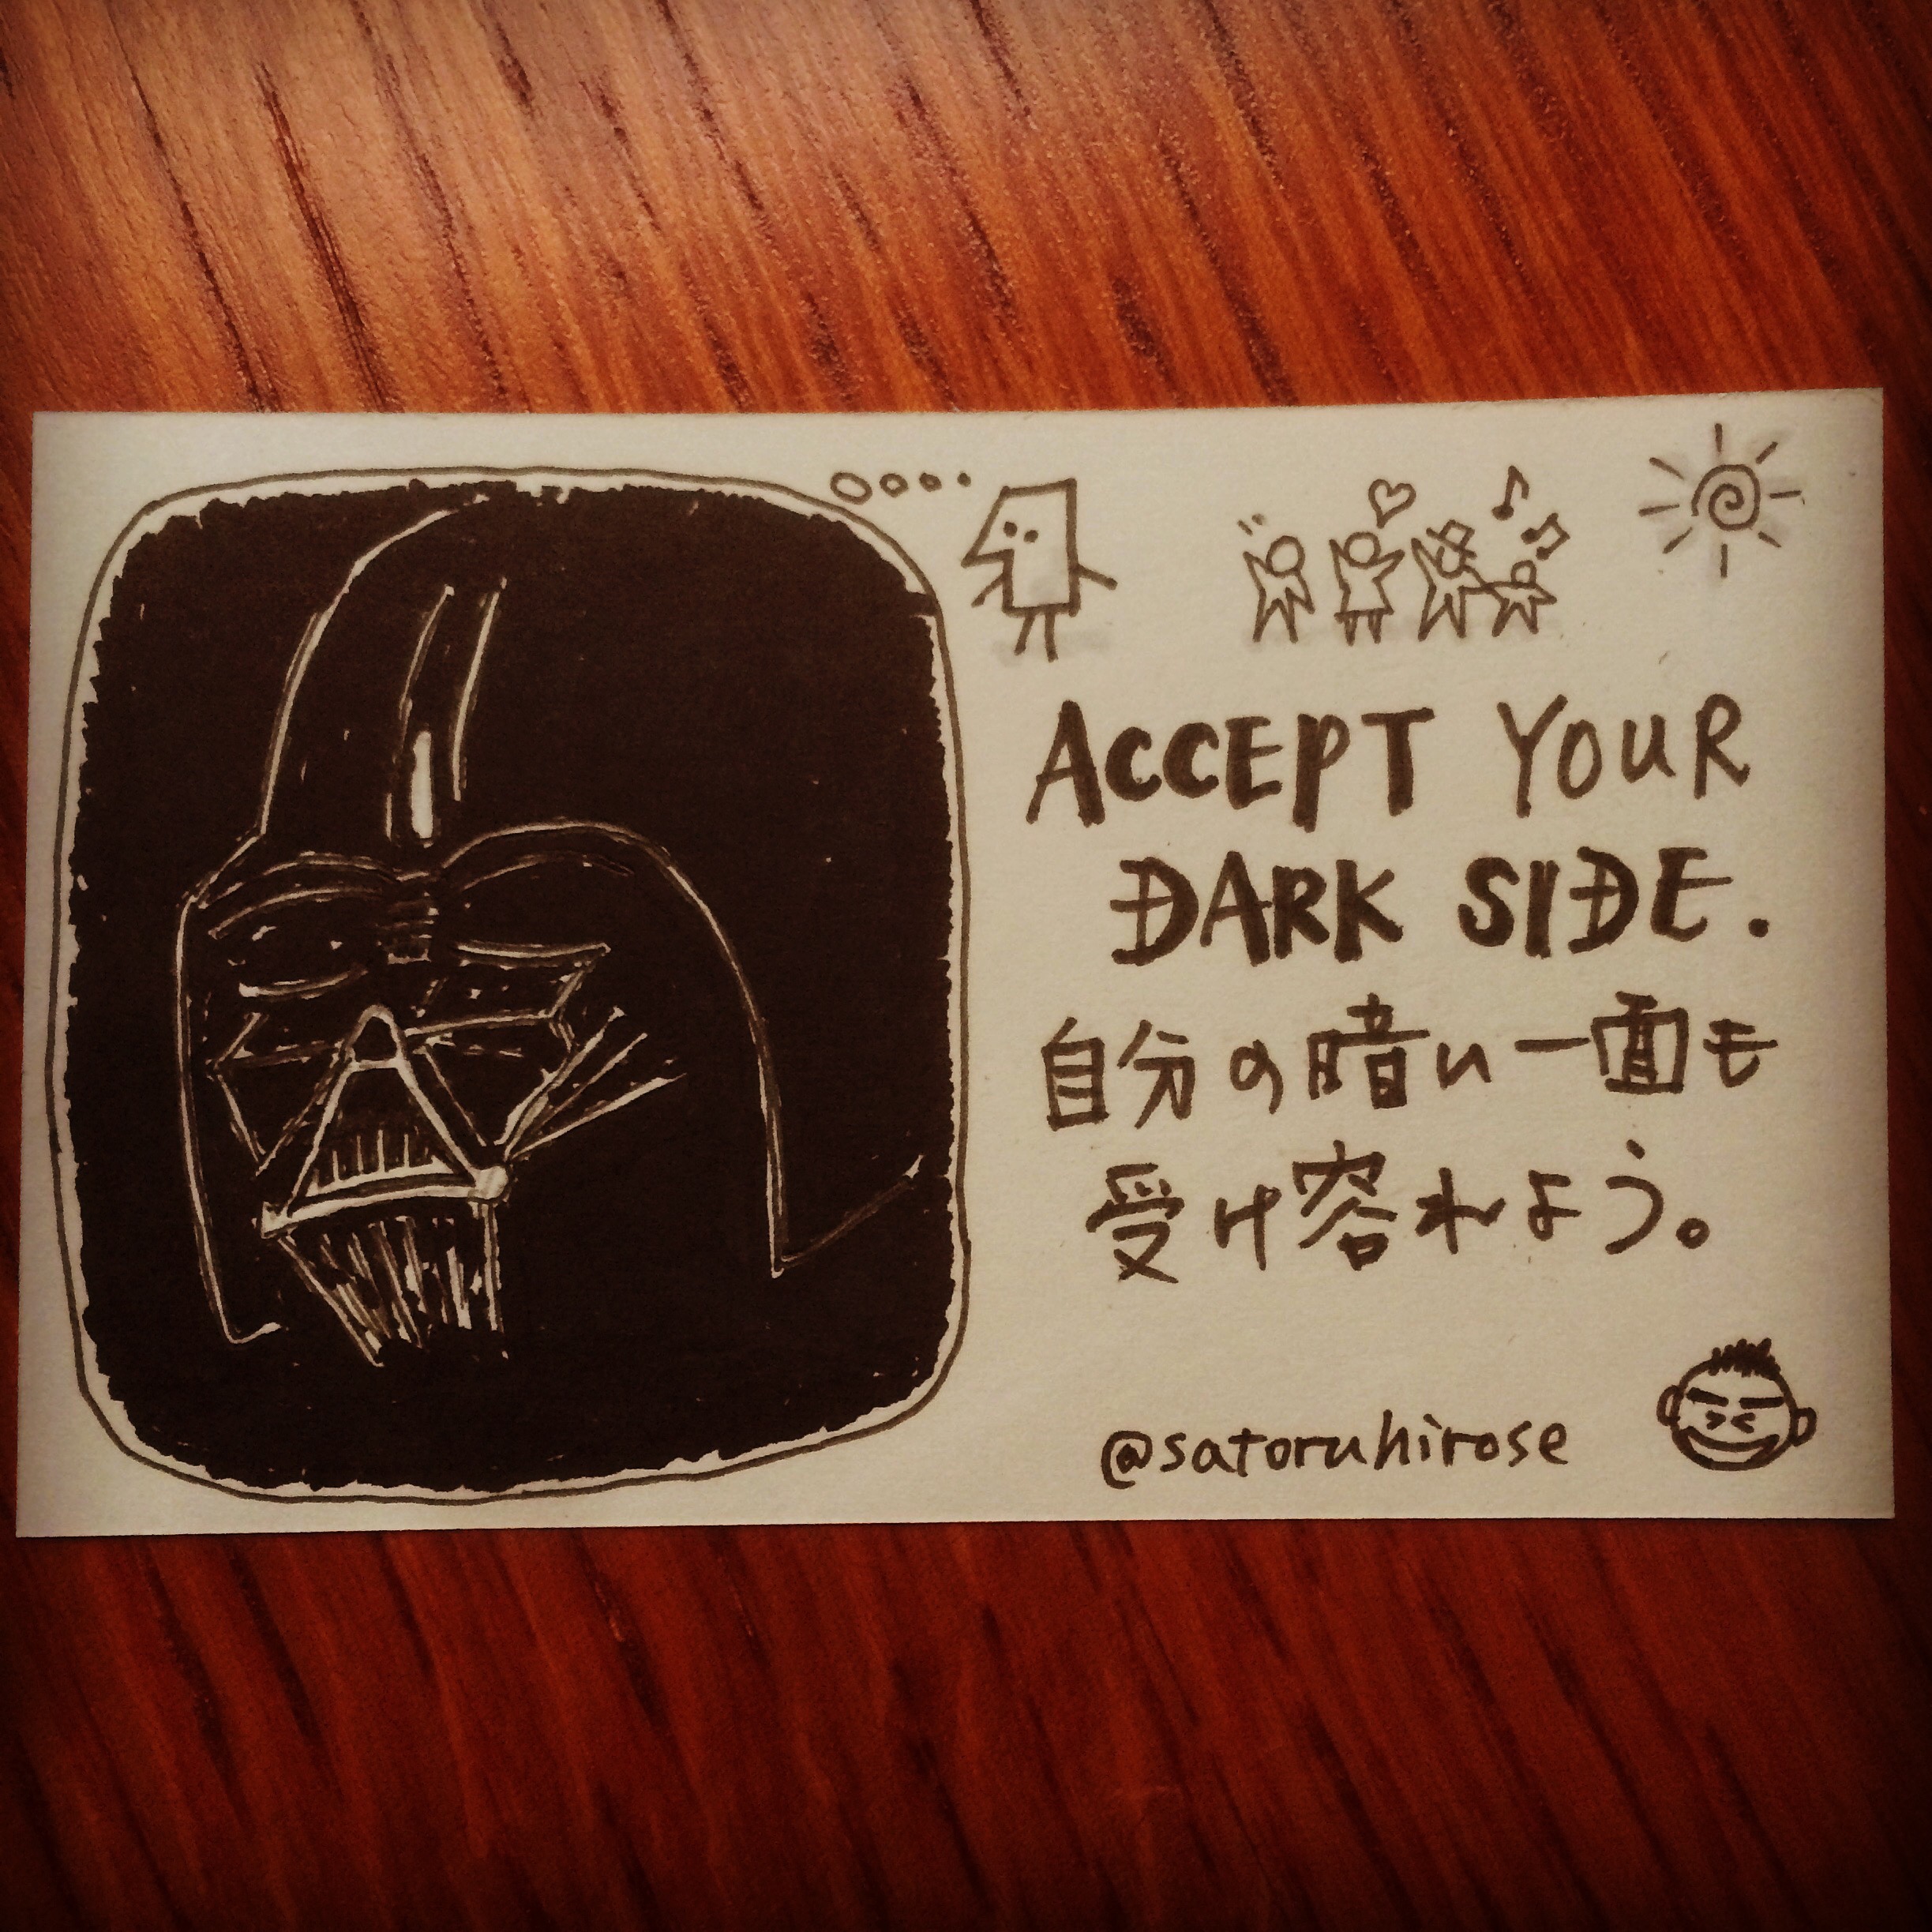 Accept your dark side.